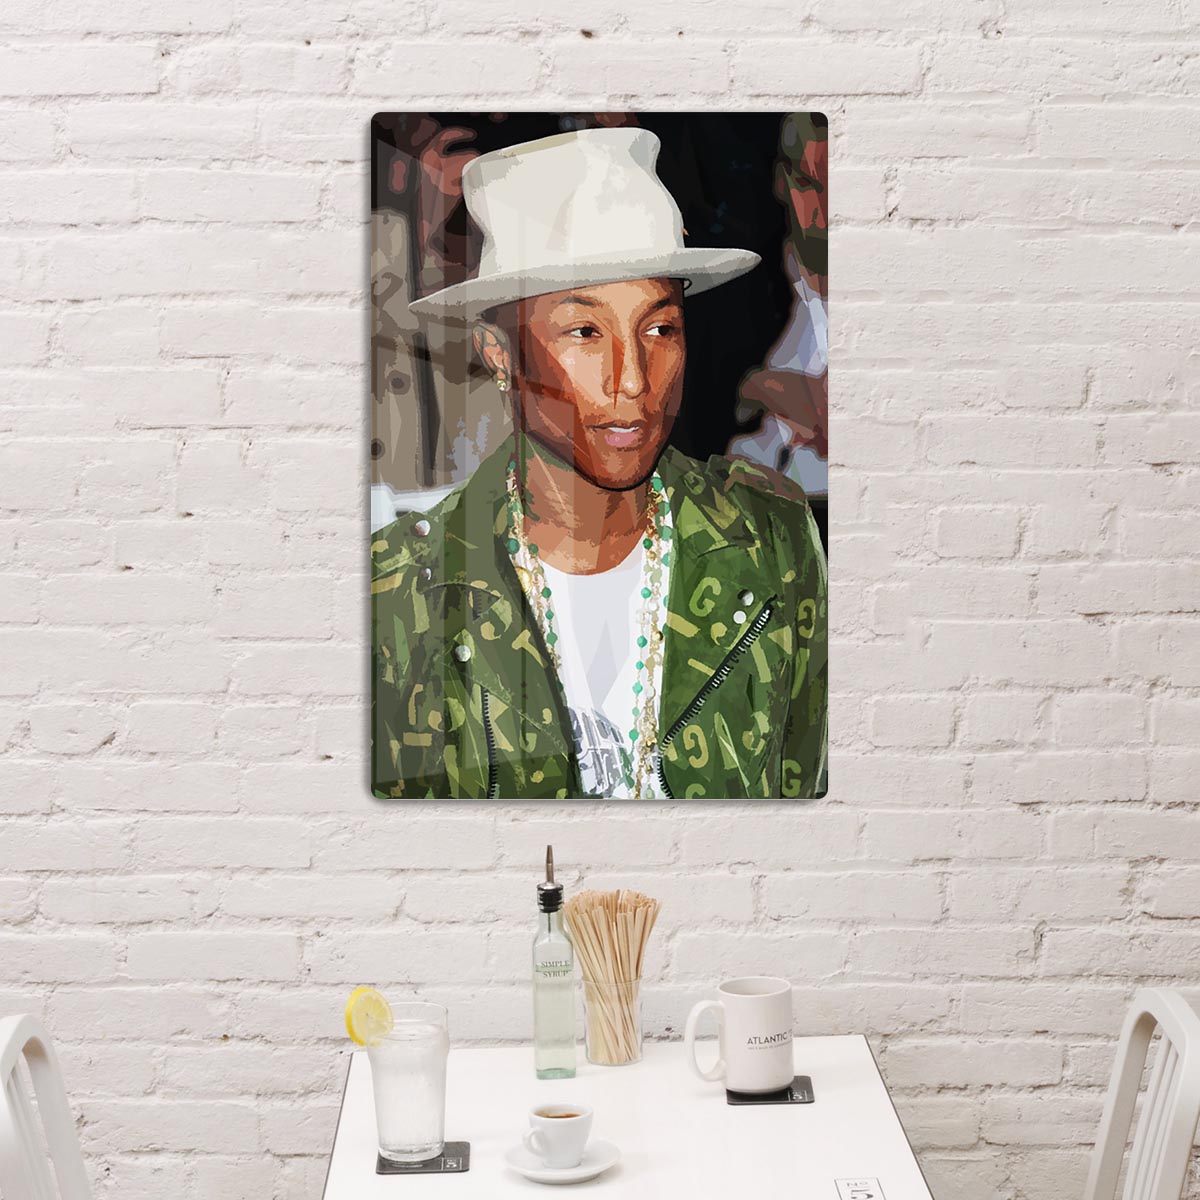 Pharrell Williams Pop Art HD Metal Print